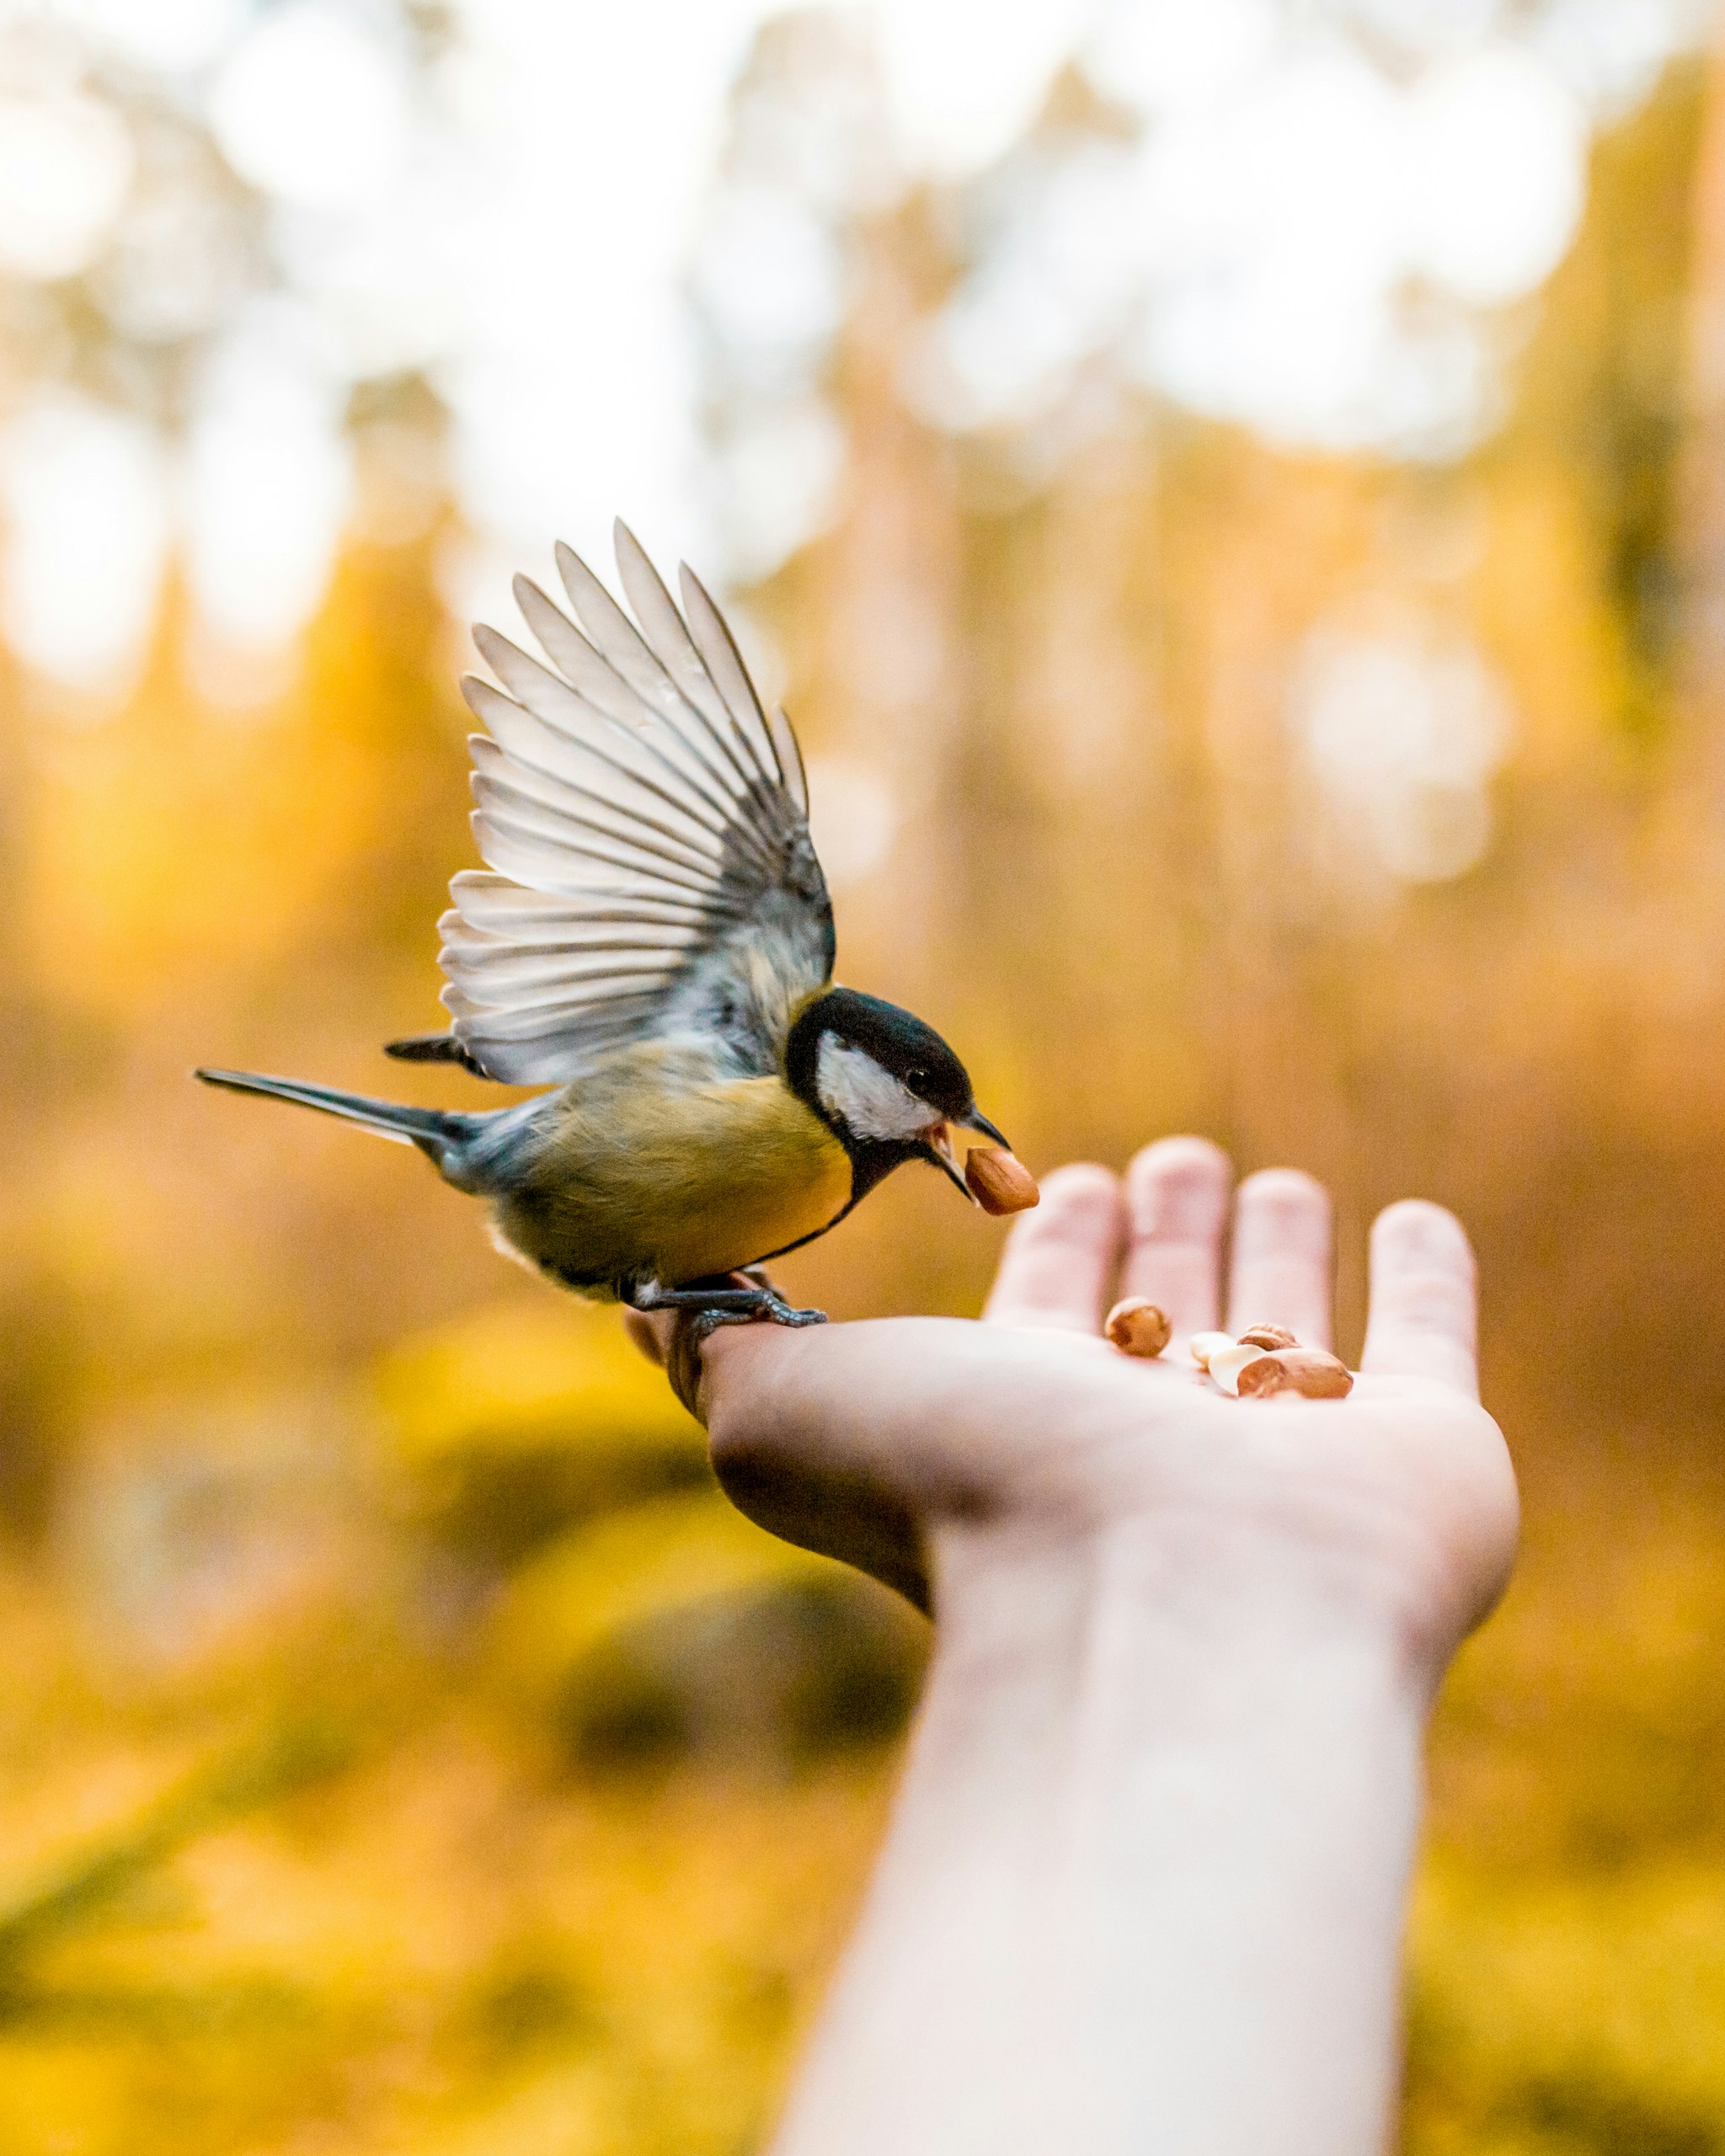 عکاسی از پرندگان: آموزشگاه دیدنگار